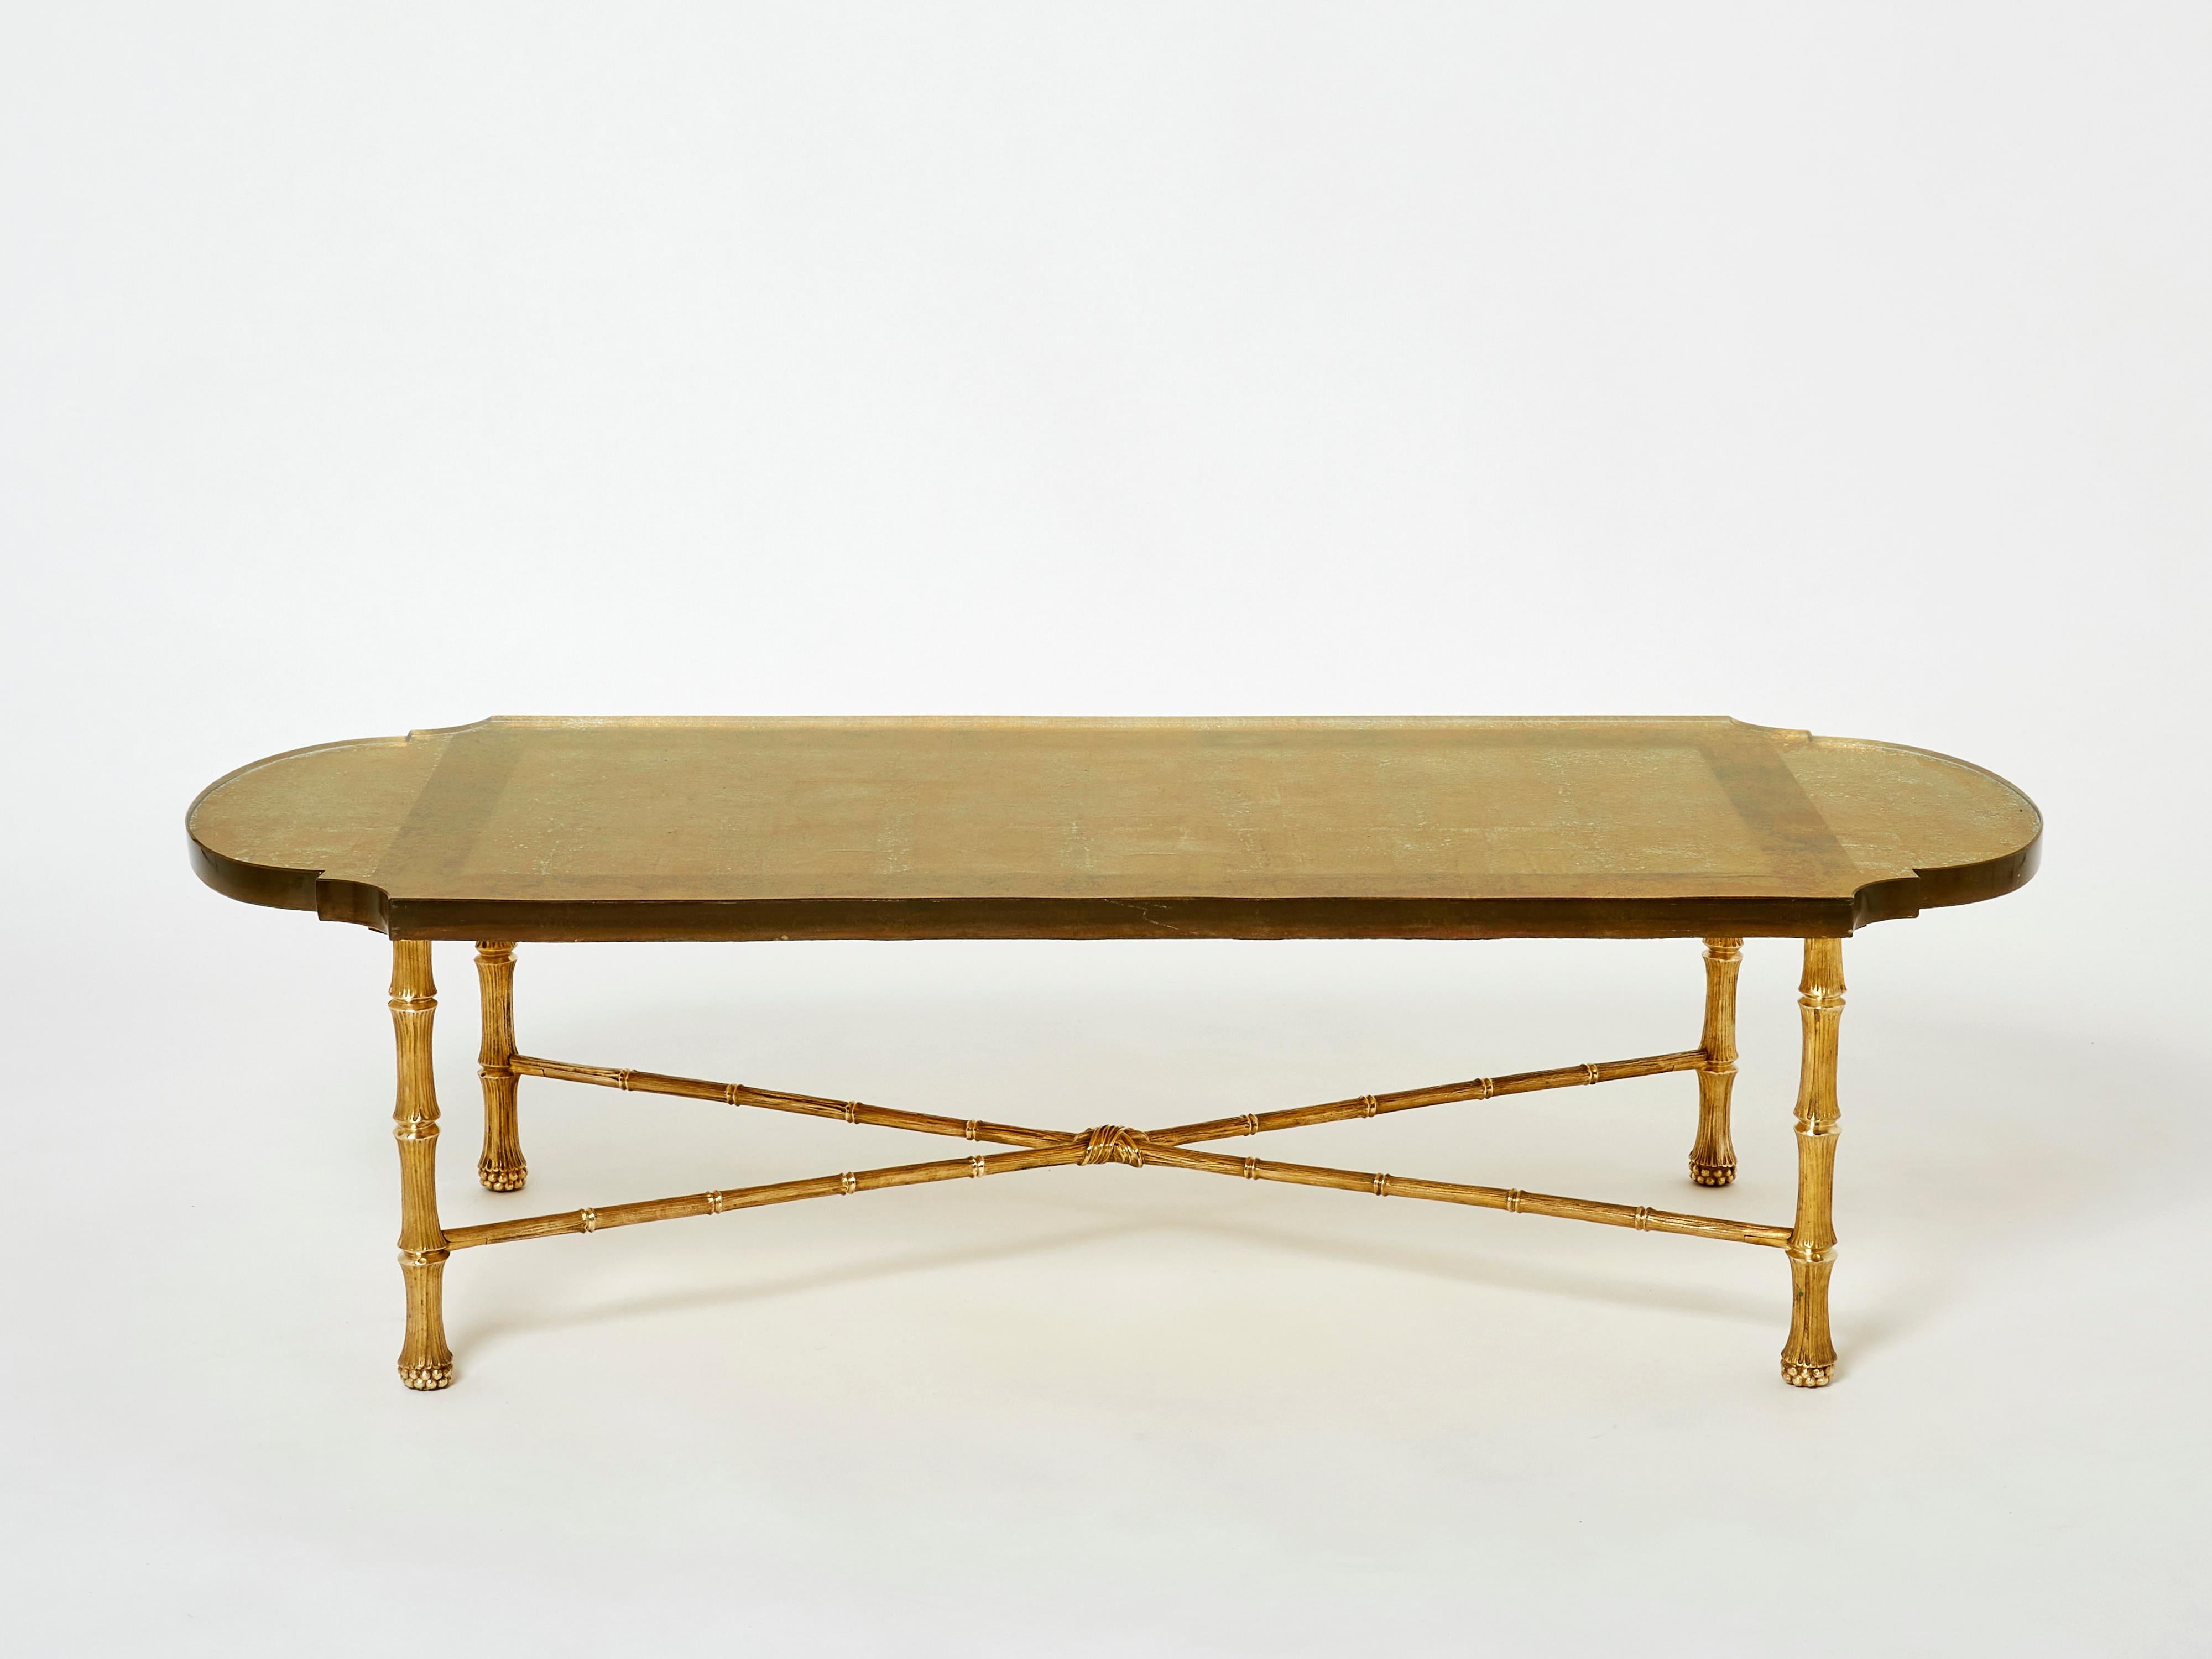 Cette magnifique table basse de la Maison Maison Baguès a été créée au début des années 1950 avec une structure en bronze massif en forme de bambou et un étonnant plateau en dalle de sable doré de Saint Gobain. L'épais plateau en verre de forme